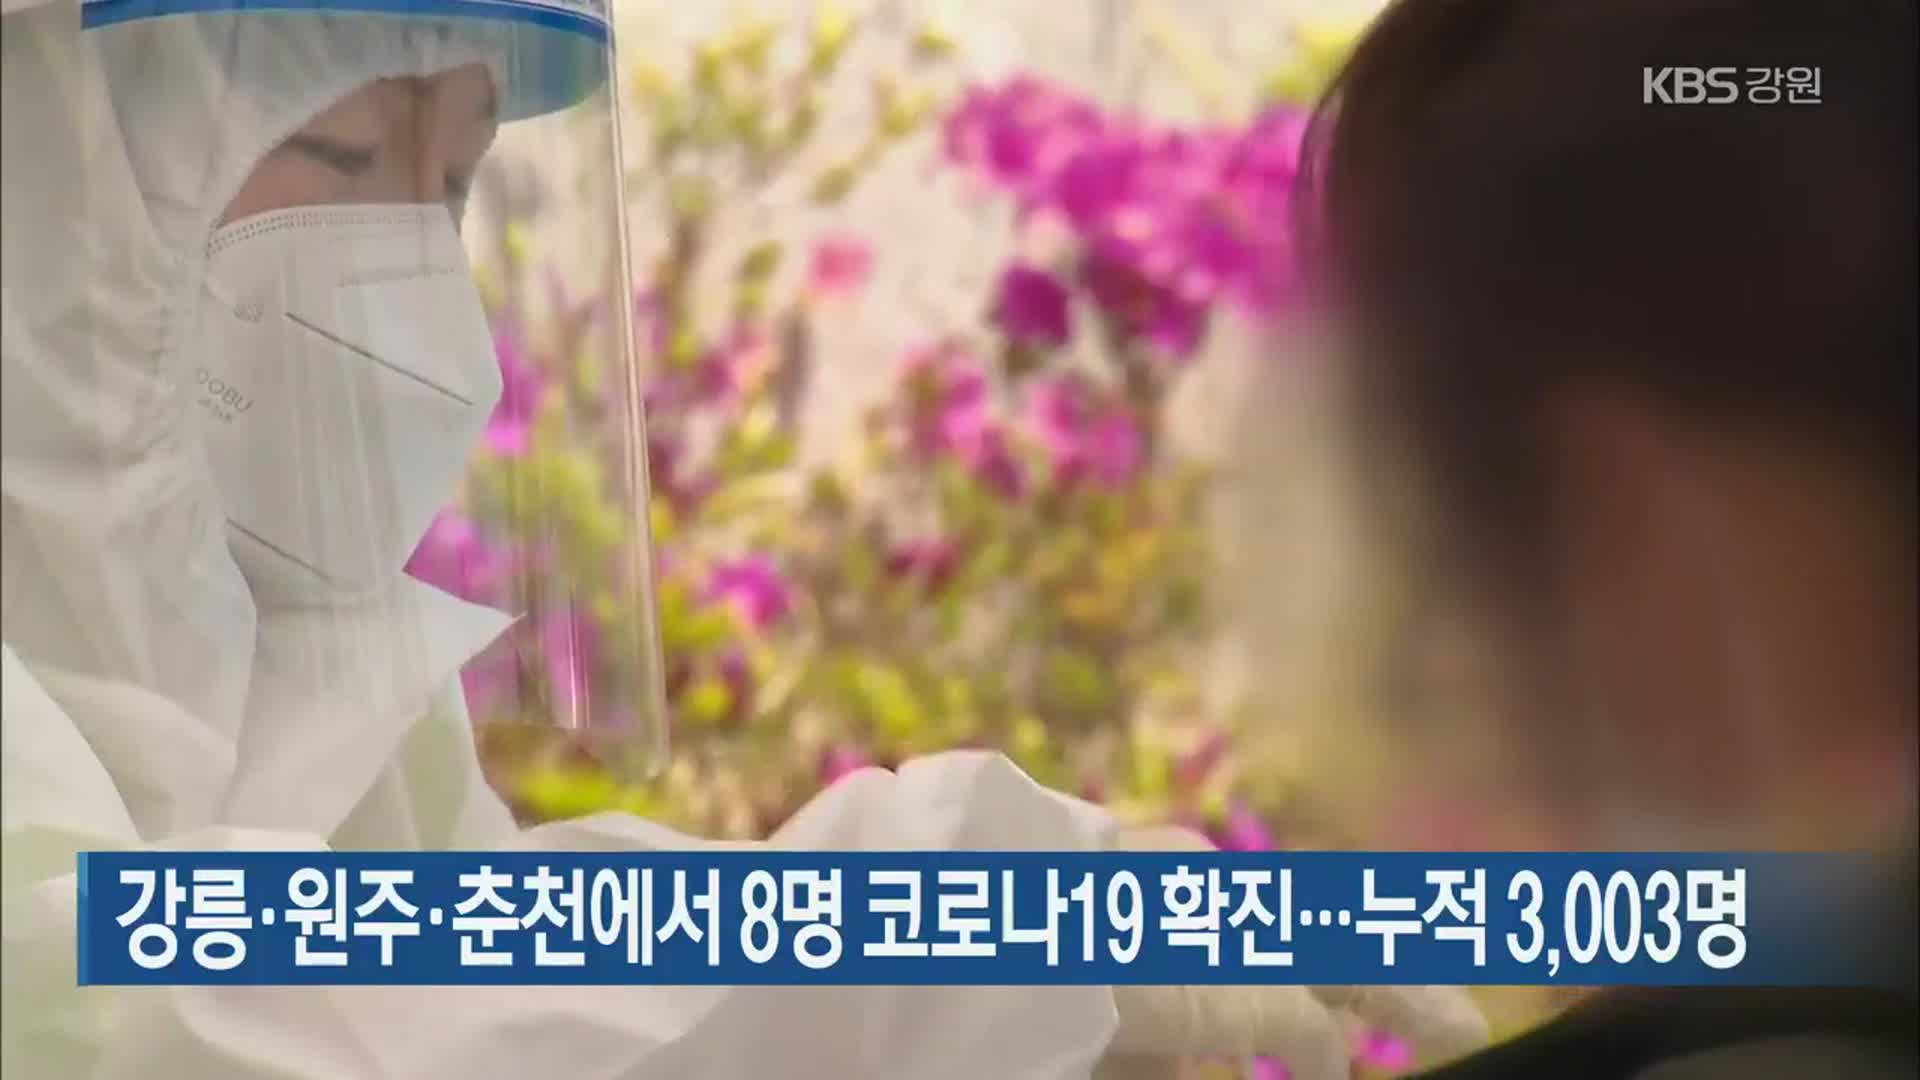 강릉·원주·춘천에서 8명 코로나19 확진…누적 3,003명